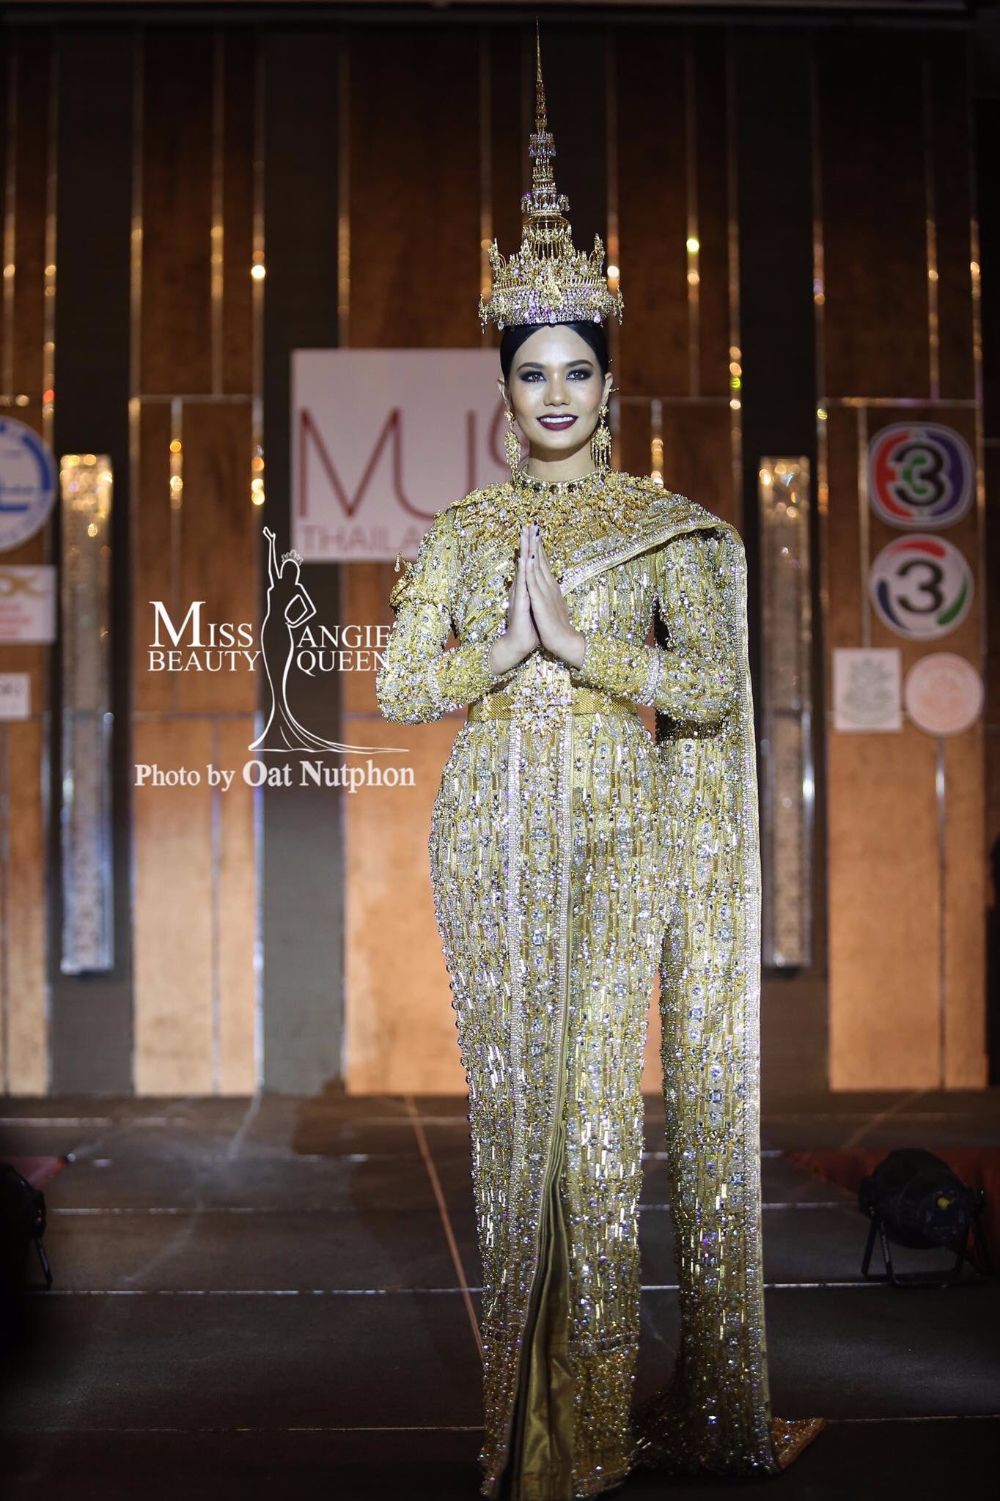 สรุปงานแถลงข่าวเปิดตัวชุดประจำชาติ และชุดราตรี Miss Universe